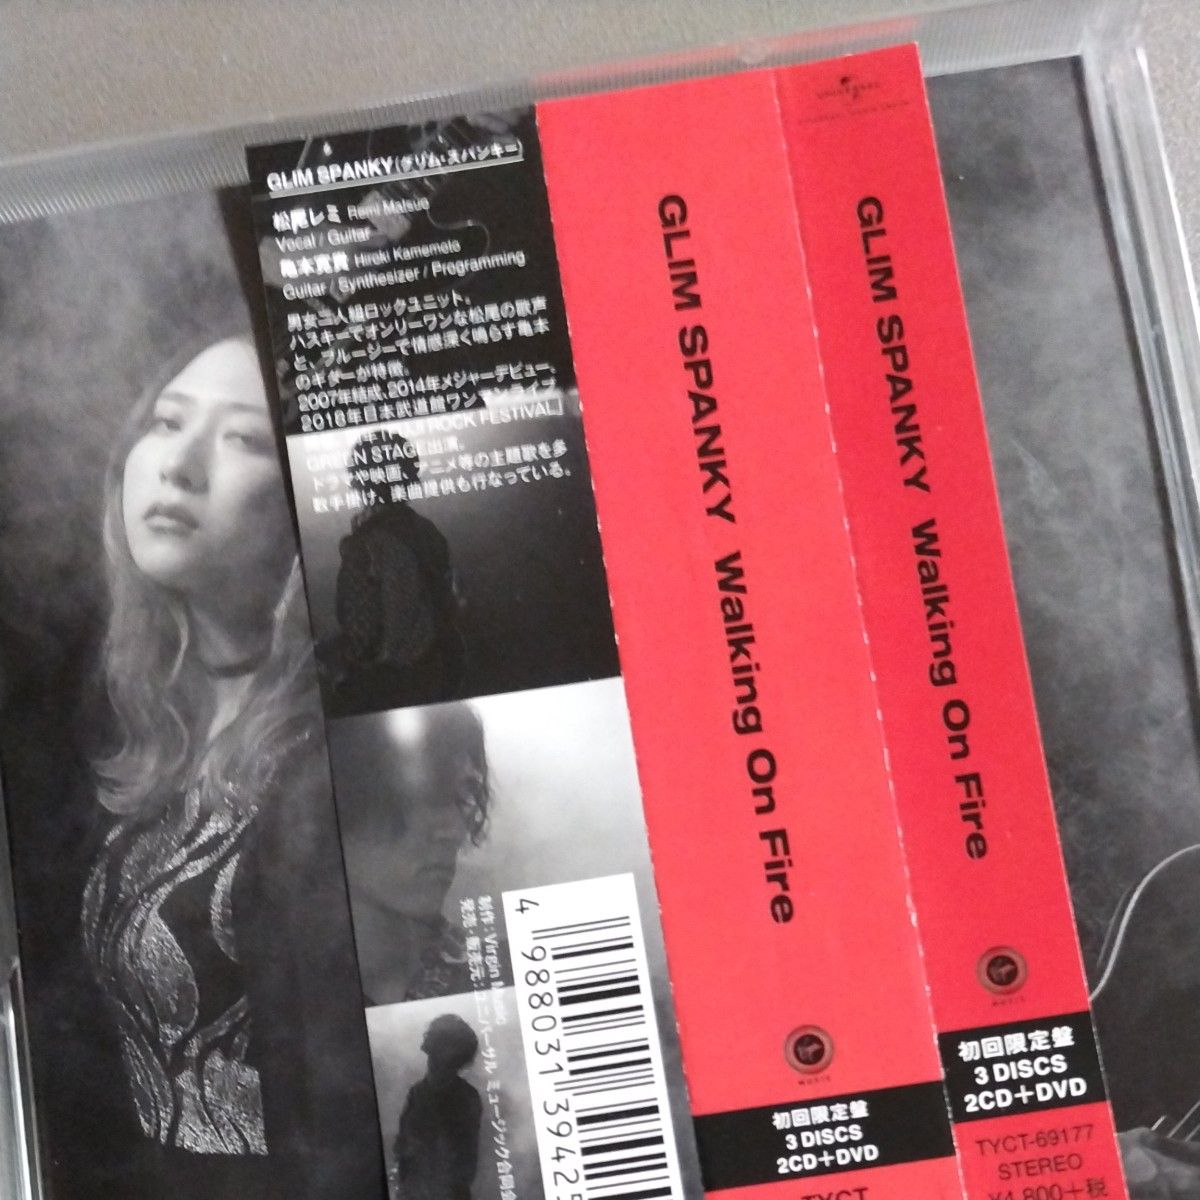 初回限定盤 (取) DVD付 GLIM SPANKY 2CD+DVD/Walking On Fire 20/10/7発売 